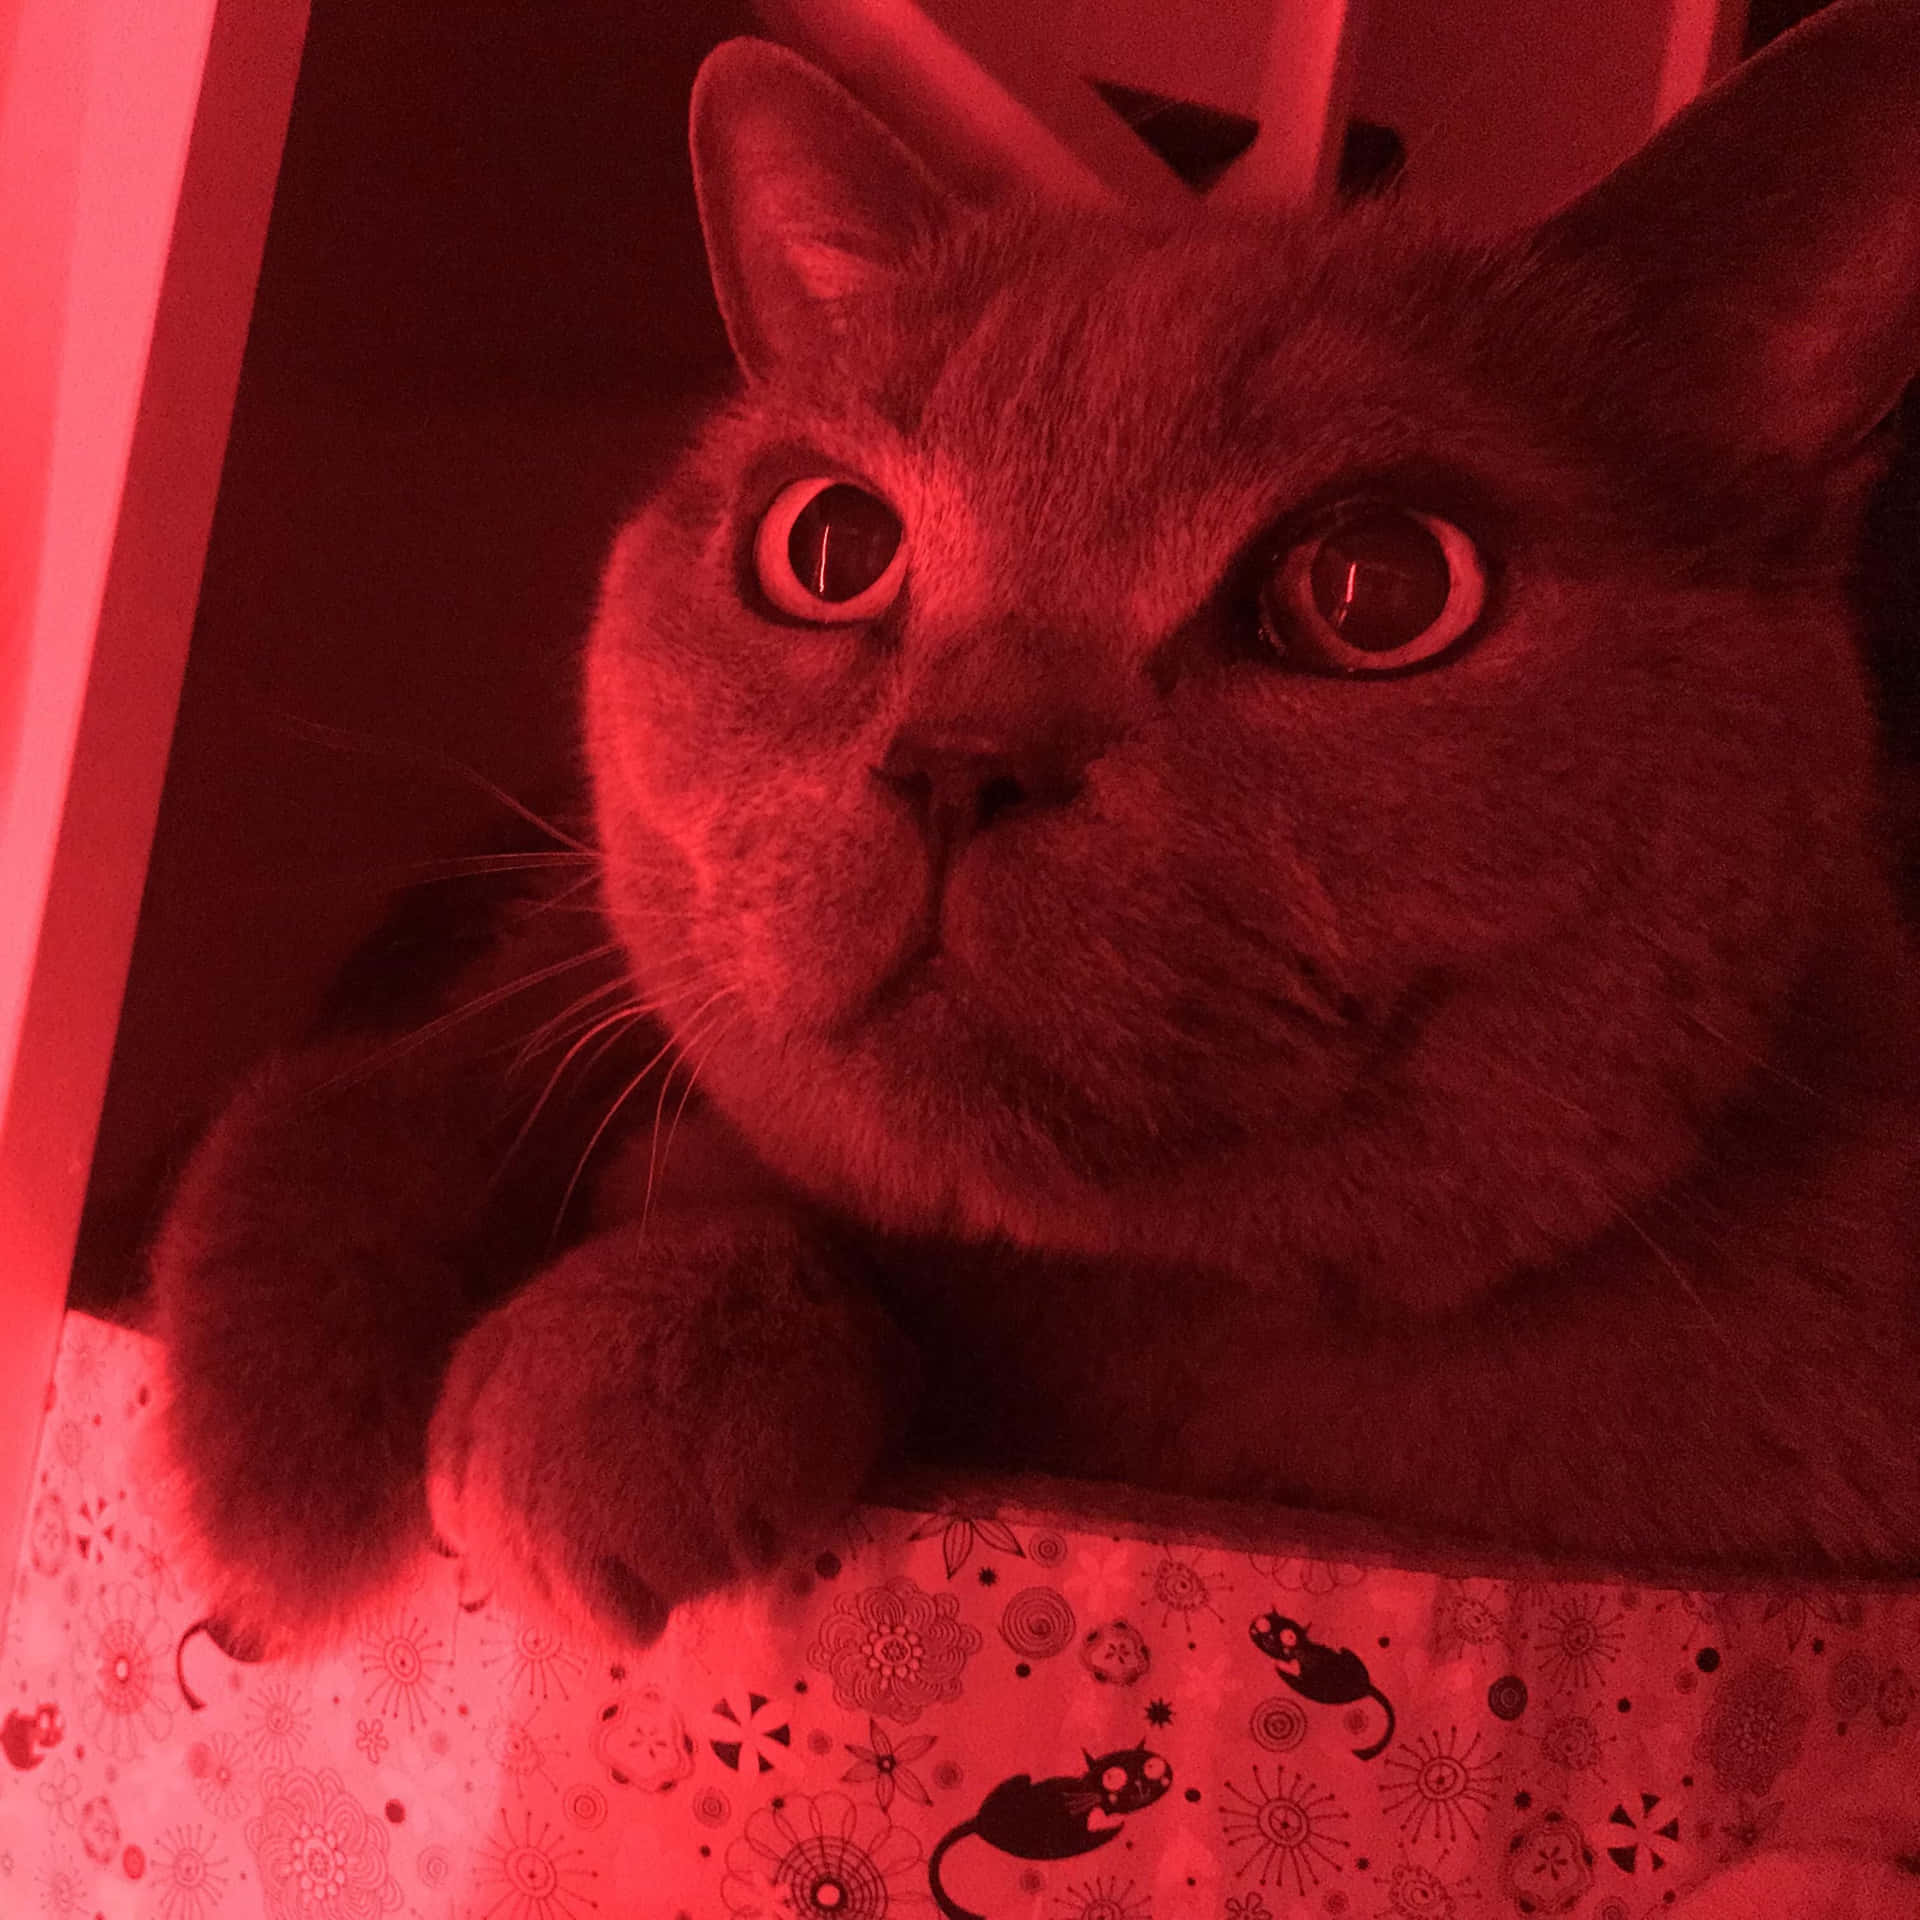 Red Cute Cat PFP Wallpaper